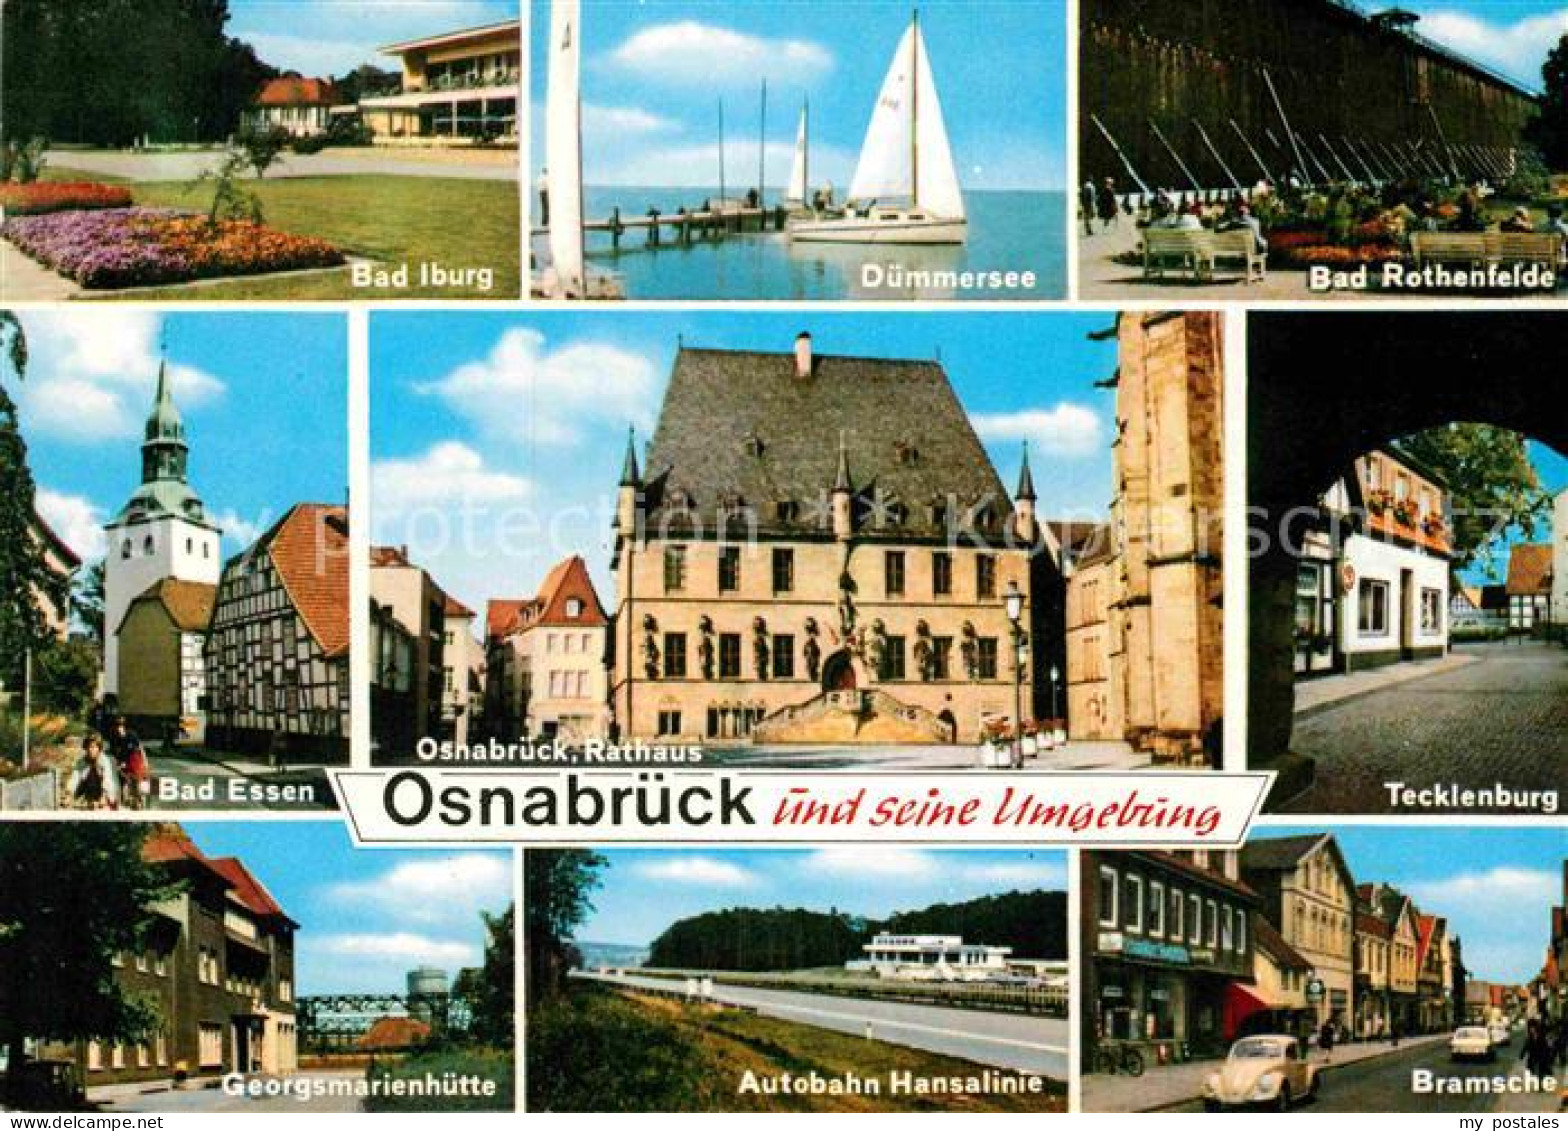 72869467 Osnabrueck Duemmersee Bad Iburg Tecklenburg Bramsche  Osnabrueck - Osnabrueck